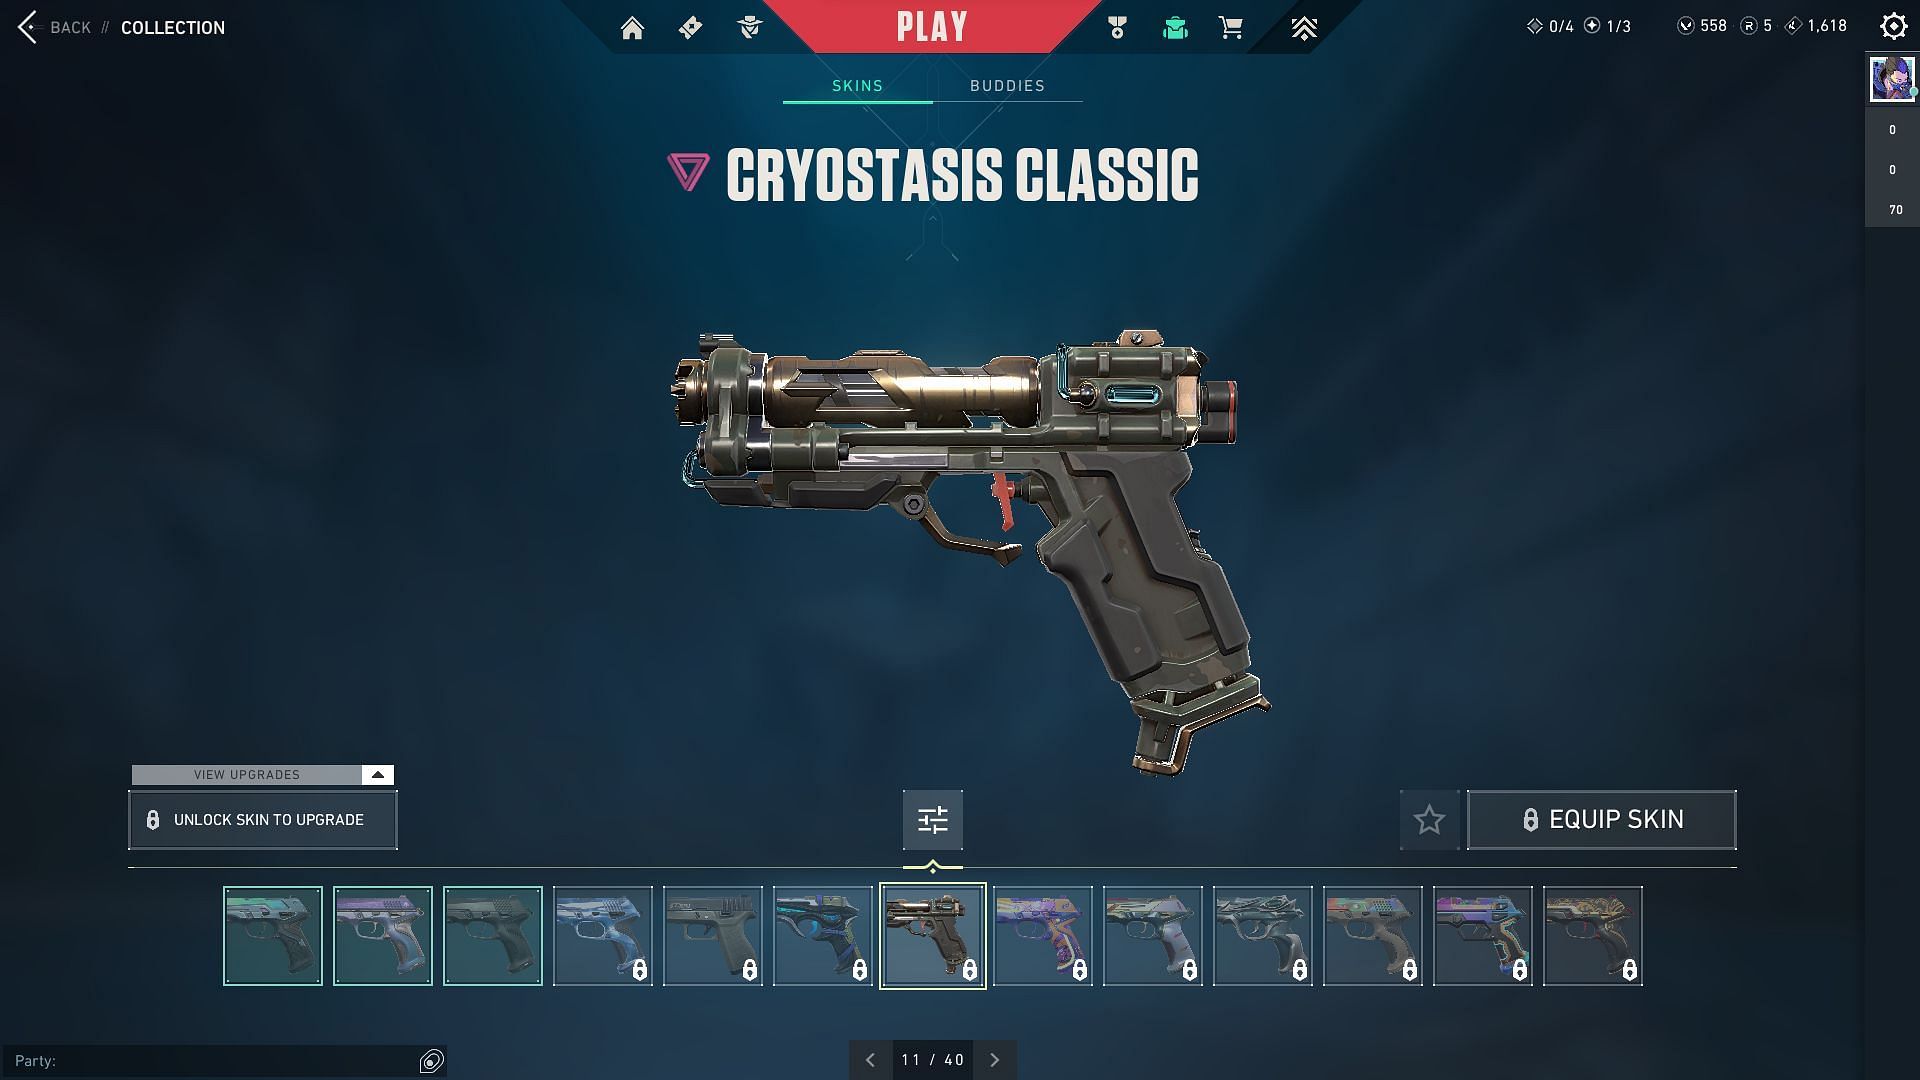 Cryostasis Classic (Image via Valorant)